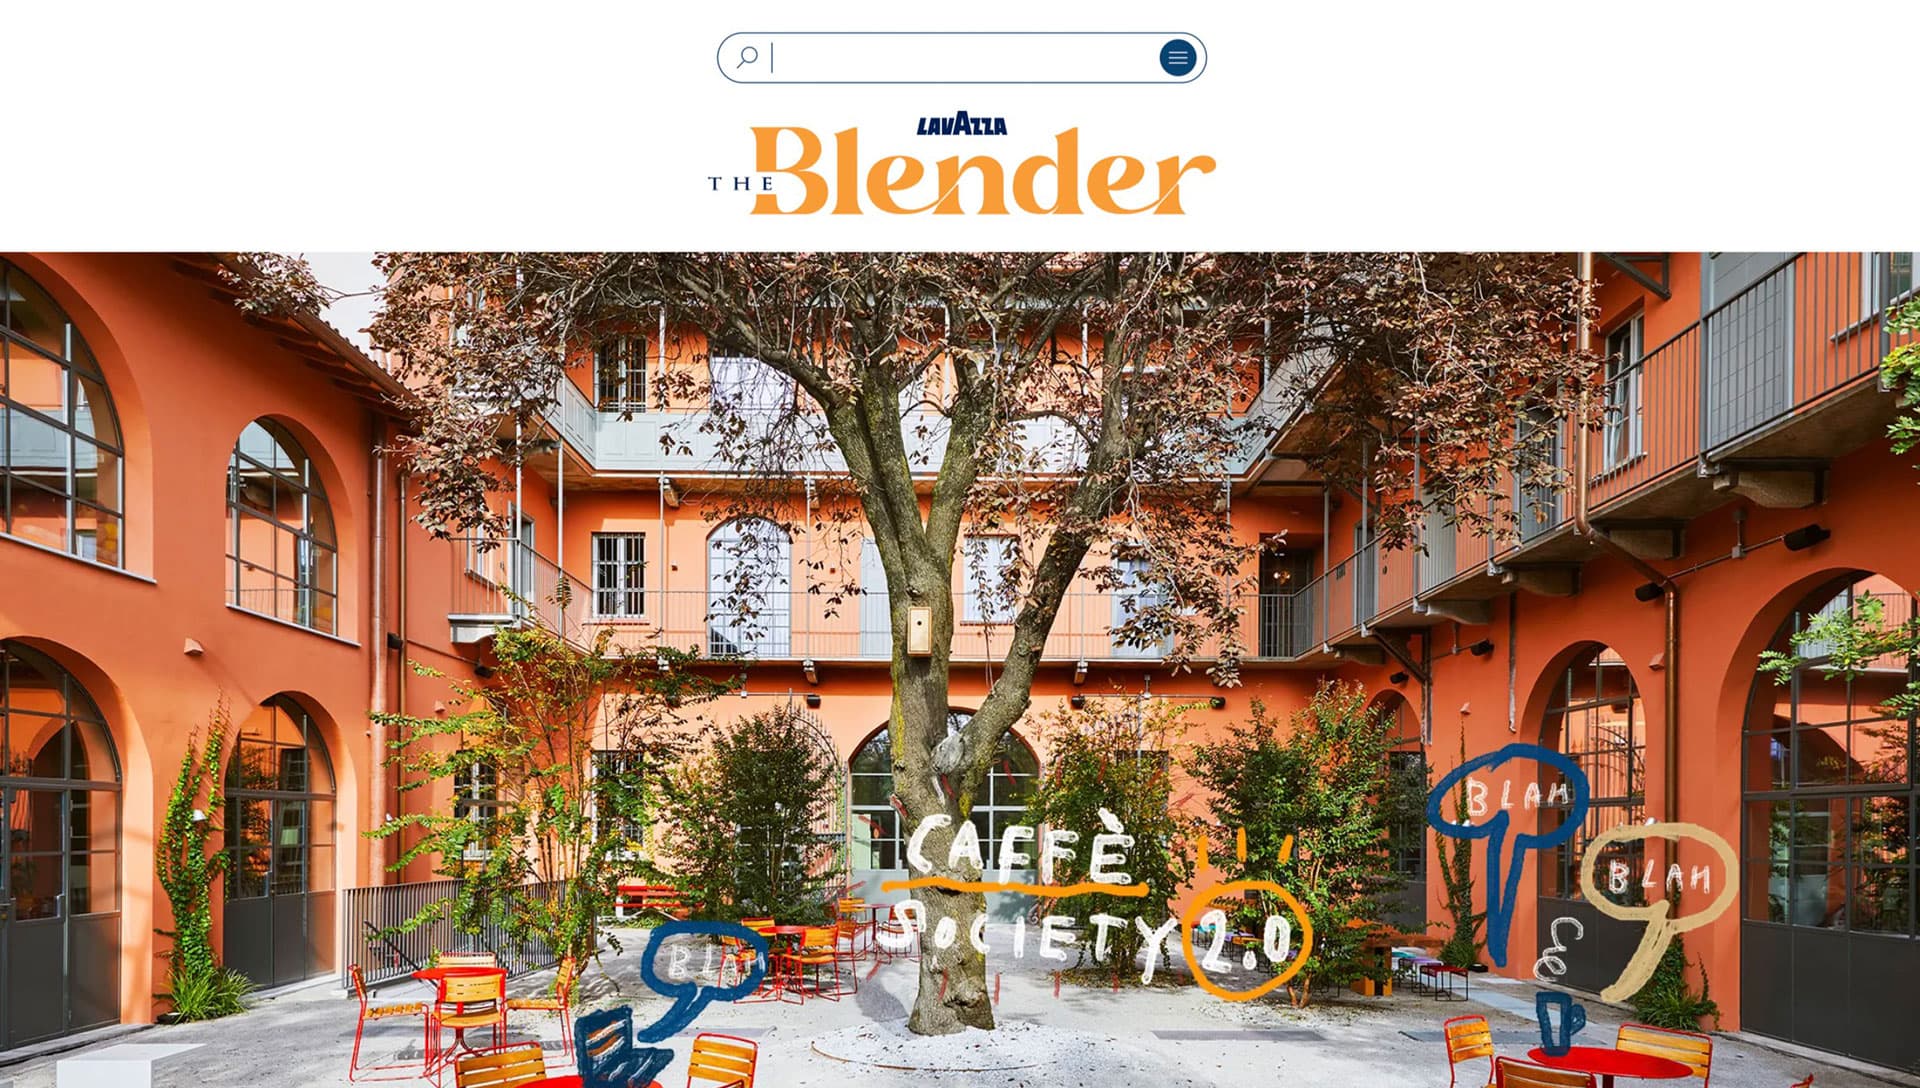 The Blender Magazine